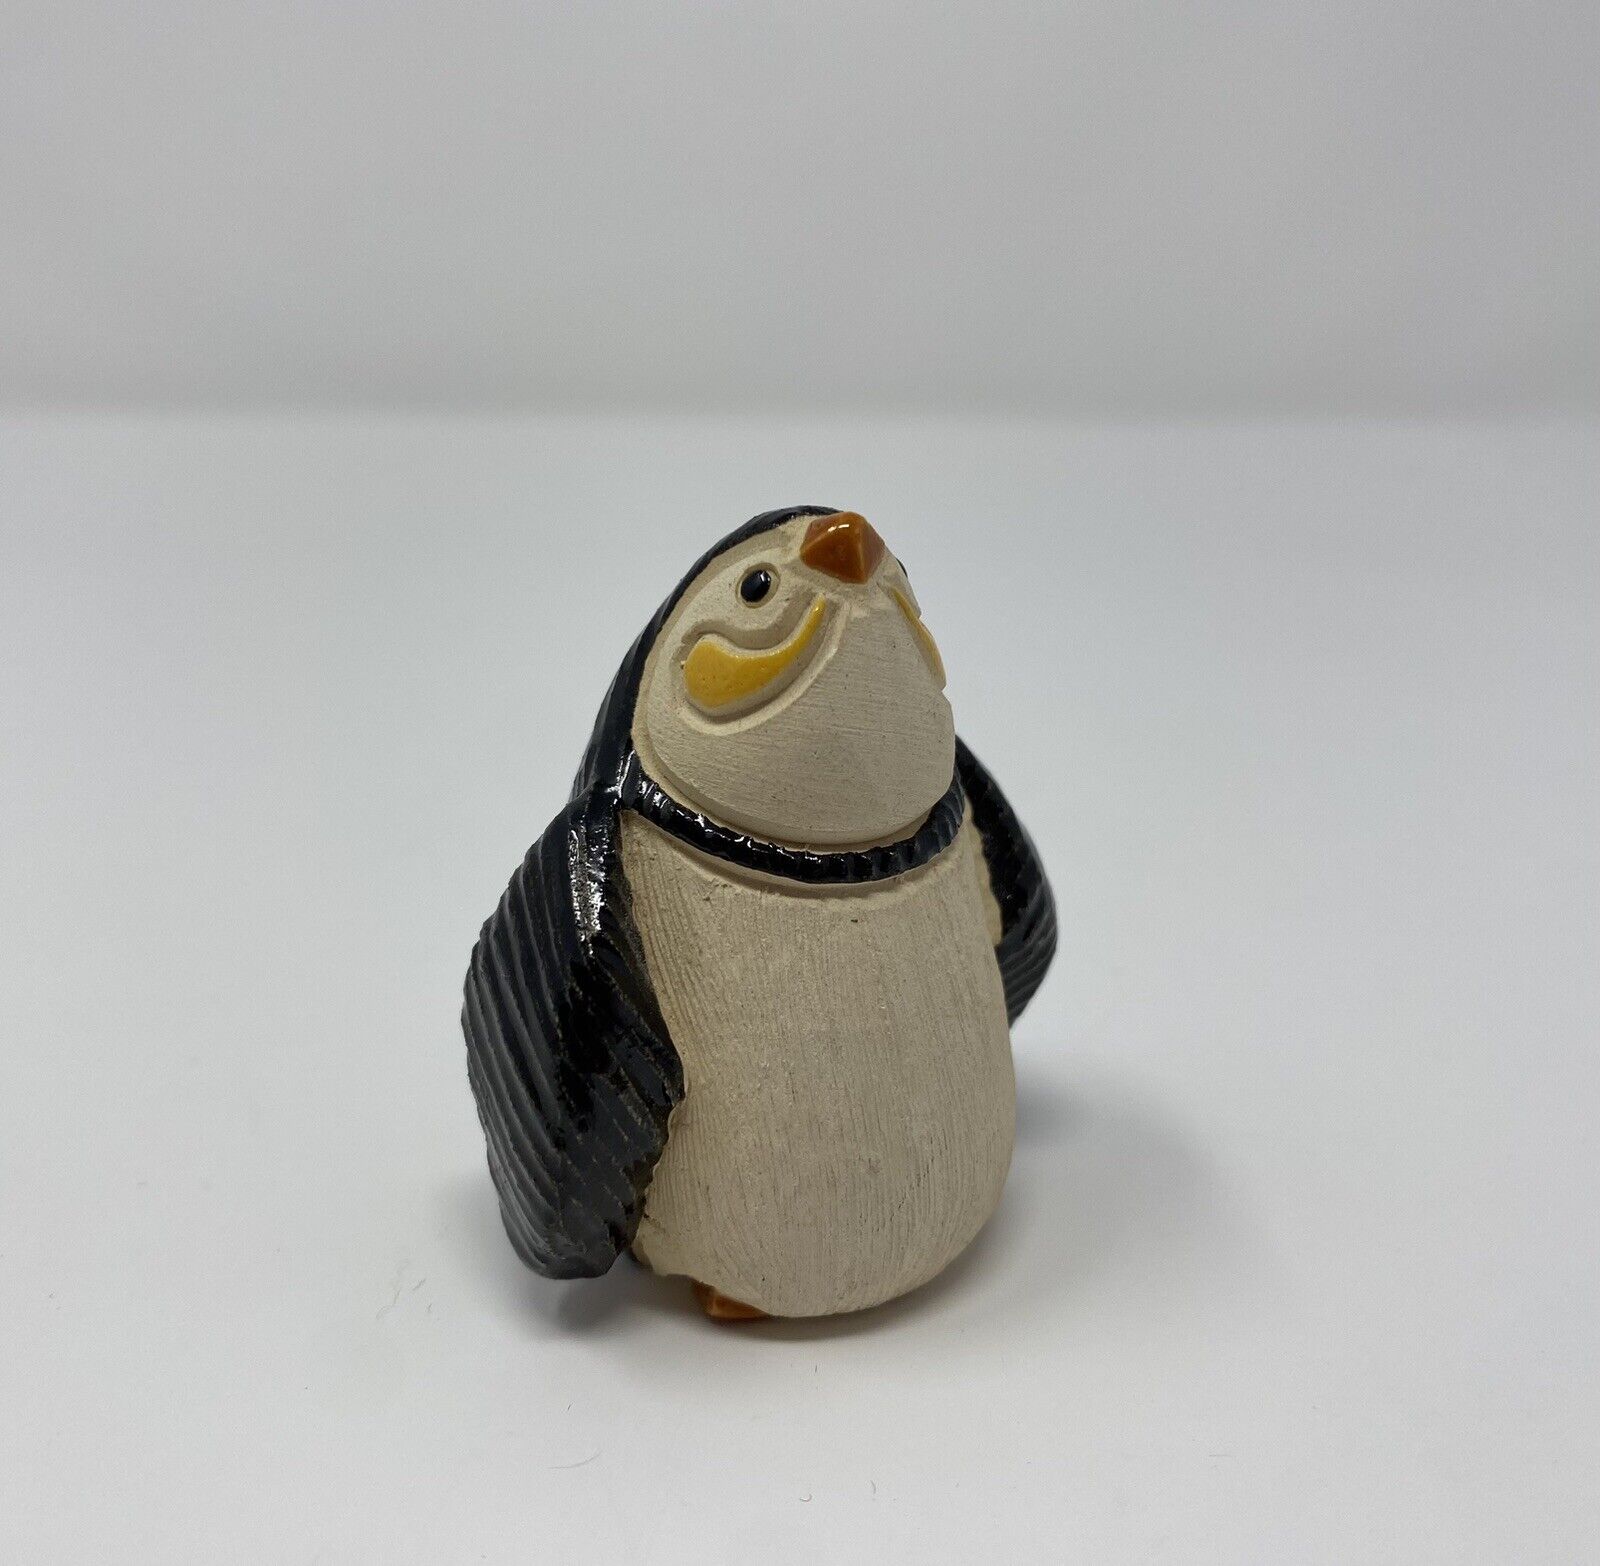 RETIRED DeRosa Artesania Rinconada Uruguay Baby Penguin Ceramic 2” Figurine